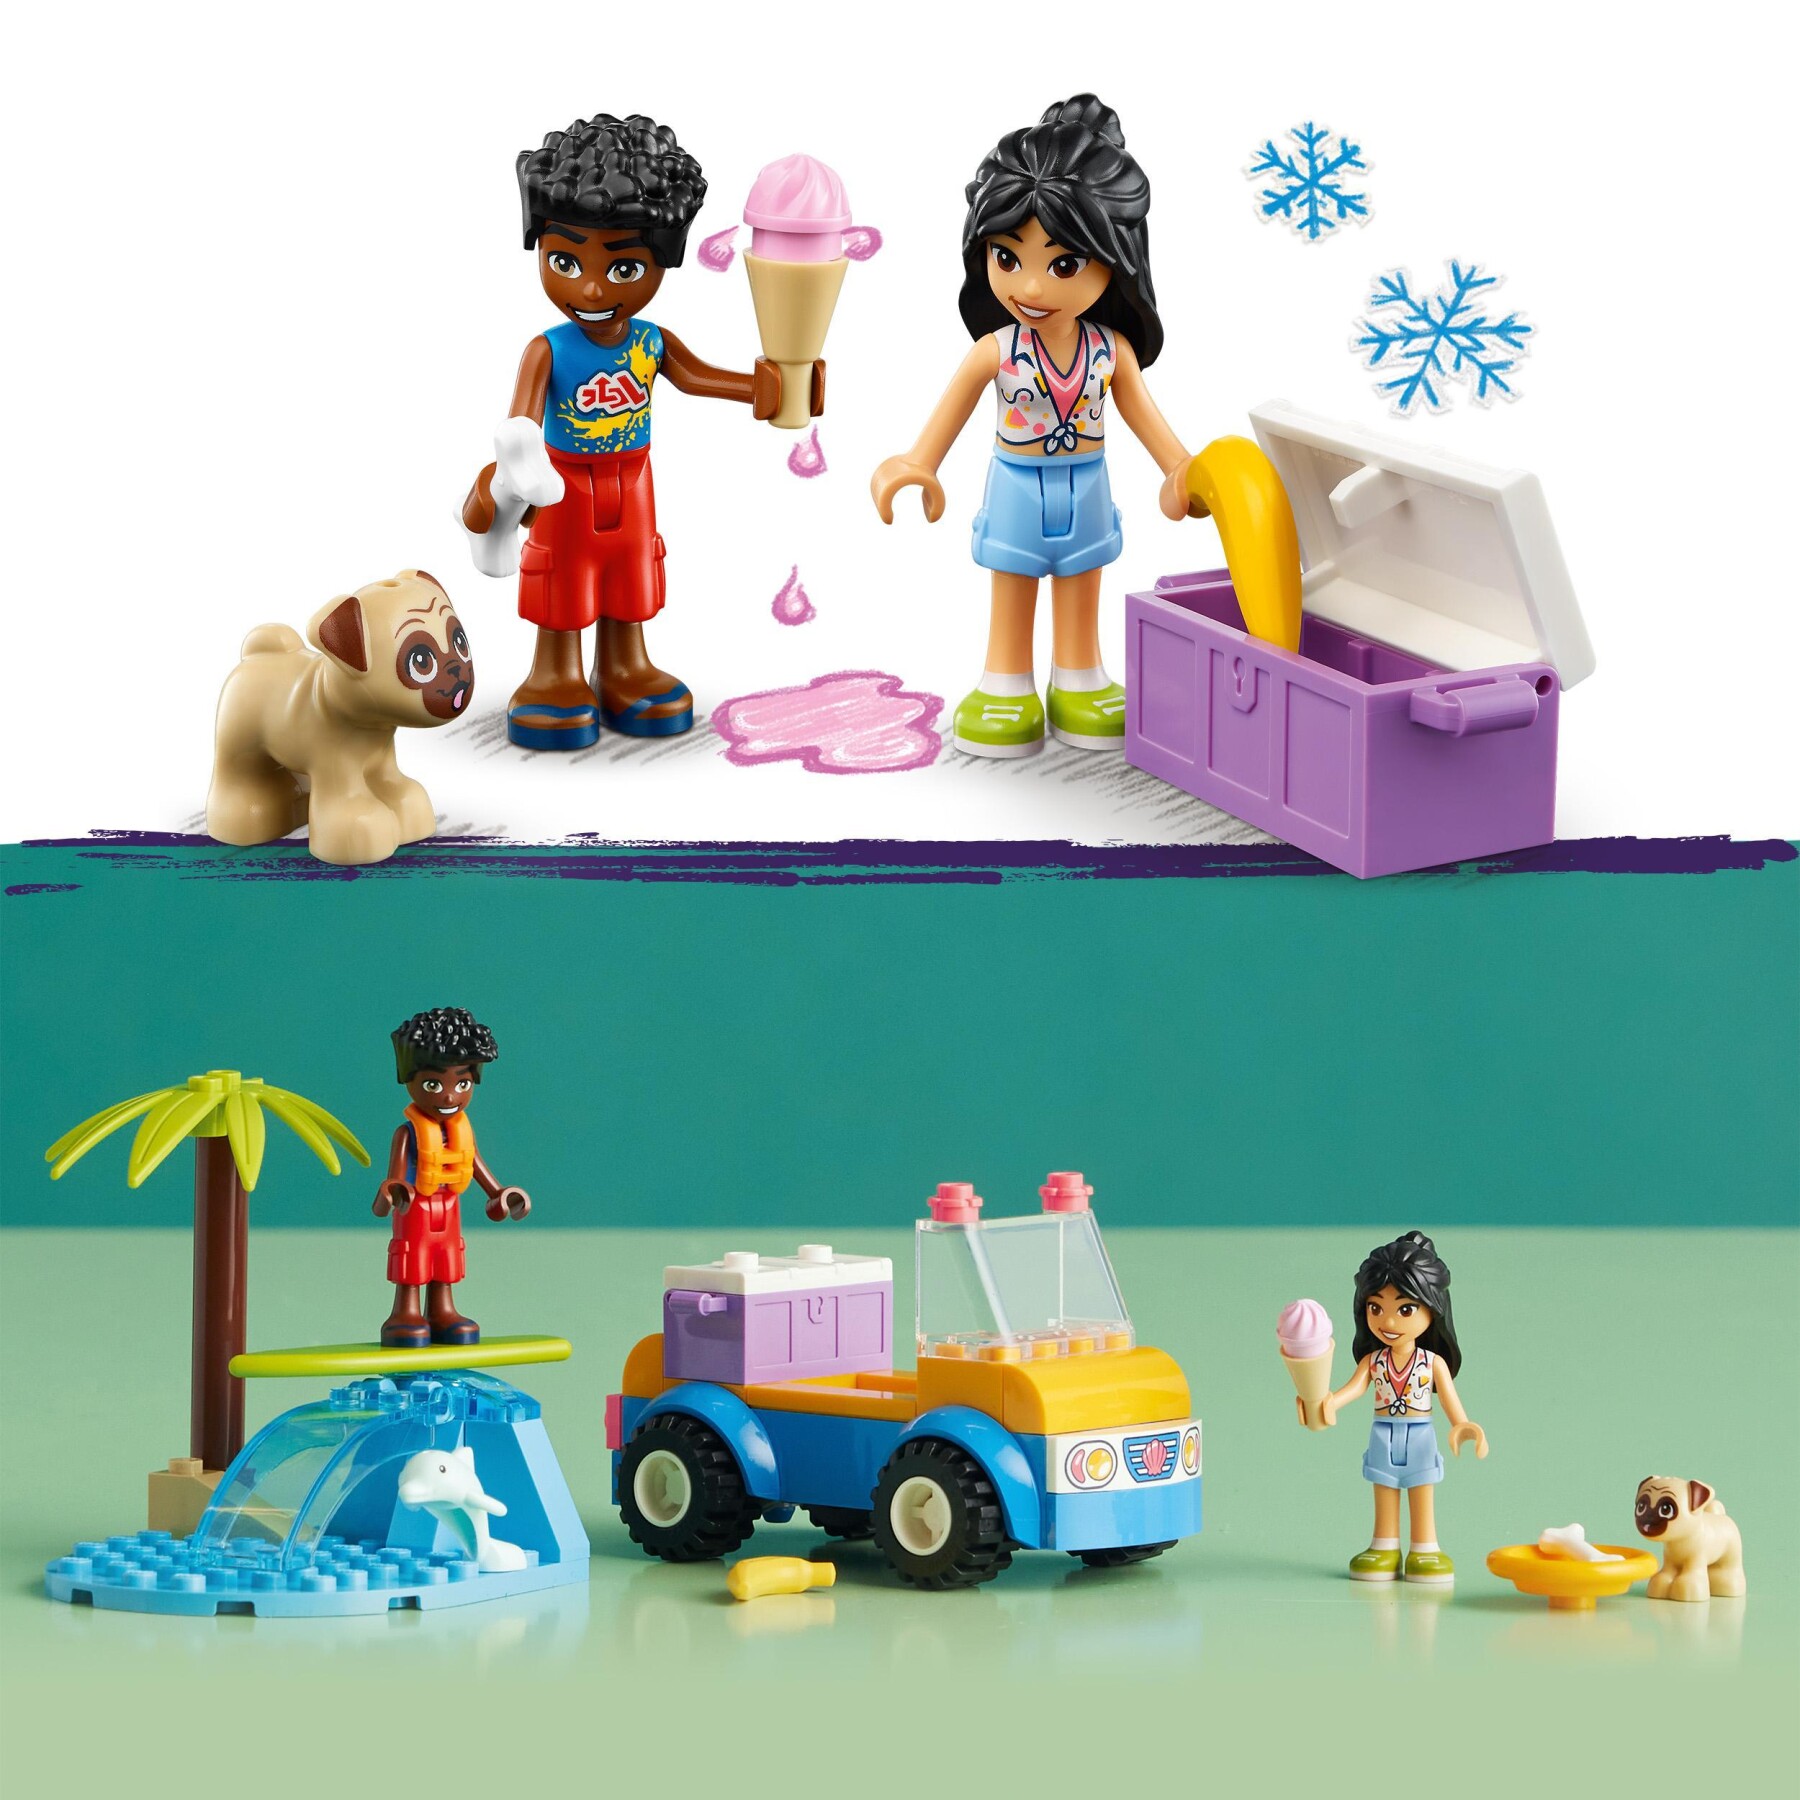 Lego friends 41725 divertimento sul beach buggy con macchina giocattolo, surf, mini bamboline, delfino e cane, giochi estivi - LEGO FRIENDS